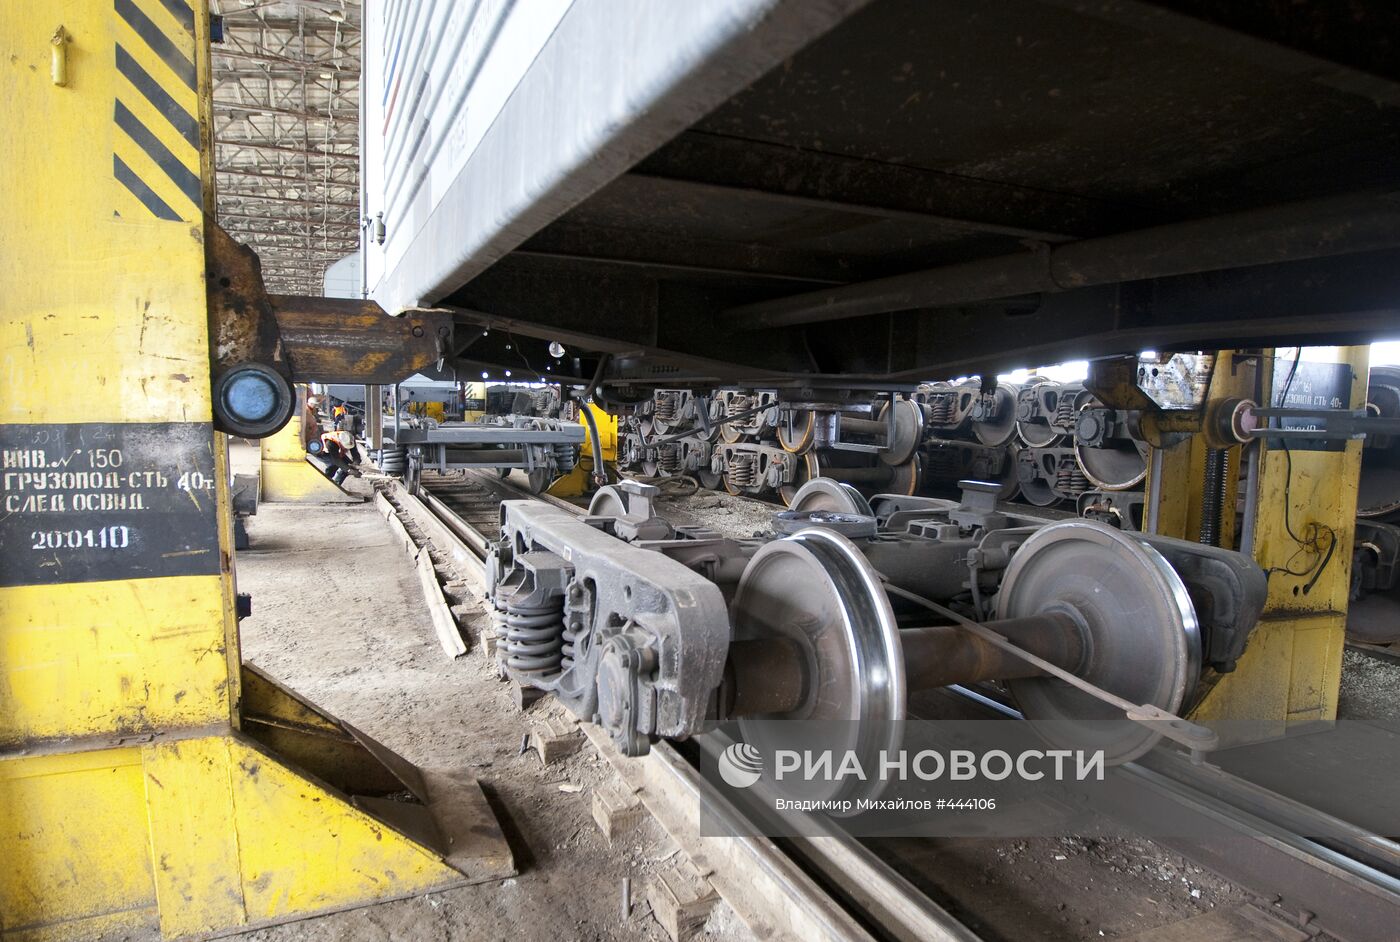 Пункт перестановки вагонов Сахалинской железной дороги в Холмске